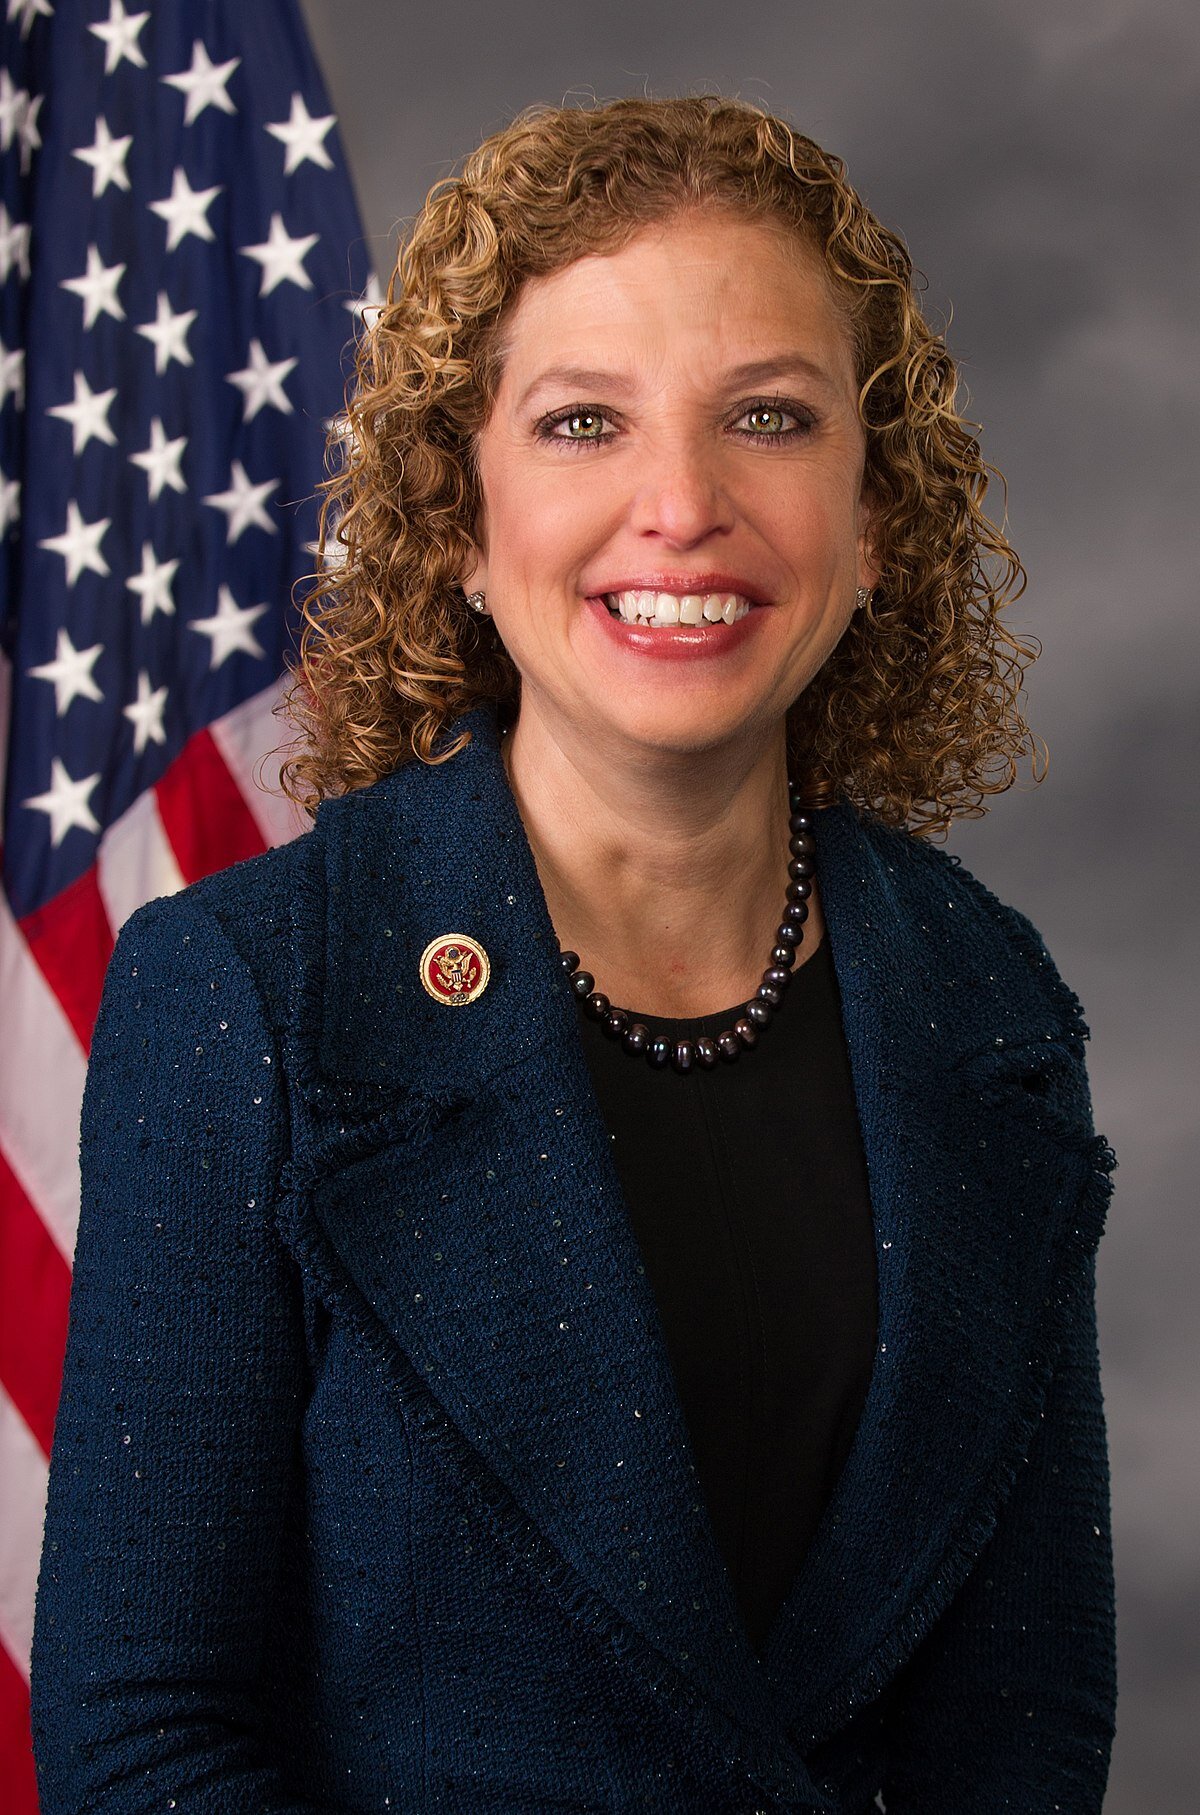 U.S Rep. Debbie Walterman Schultz